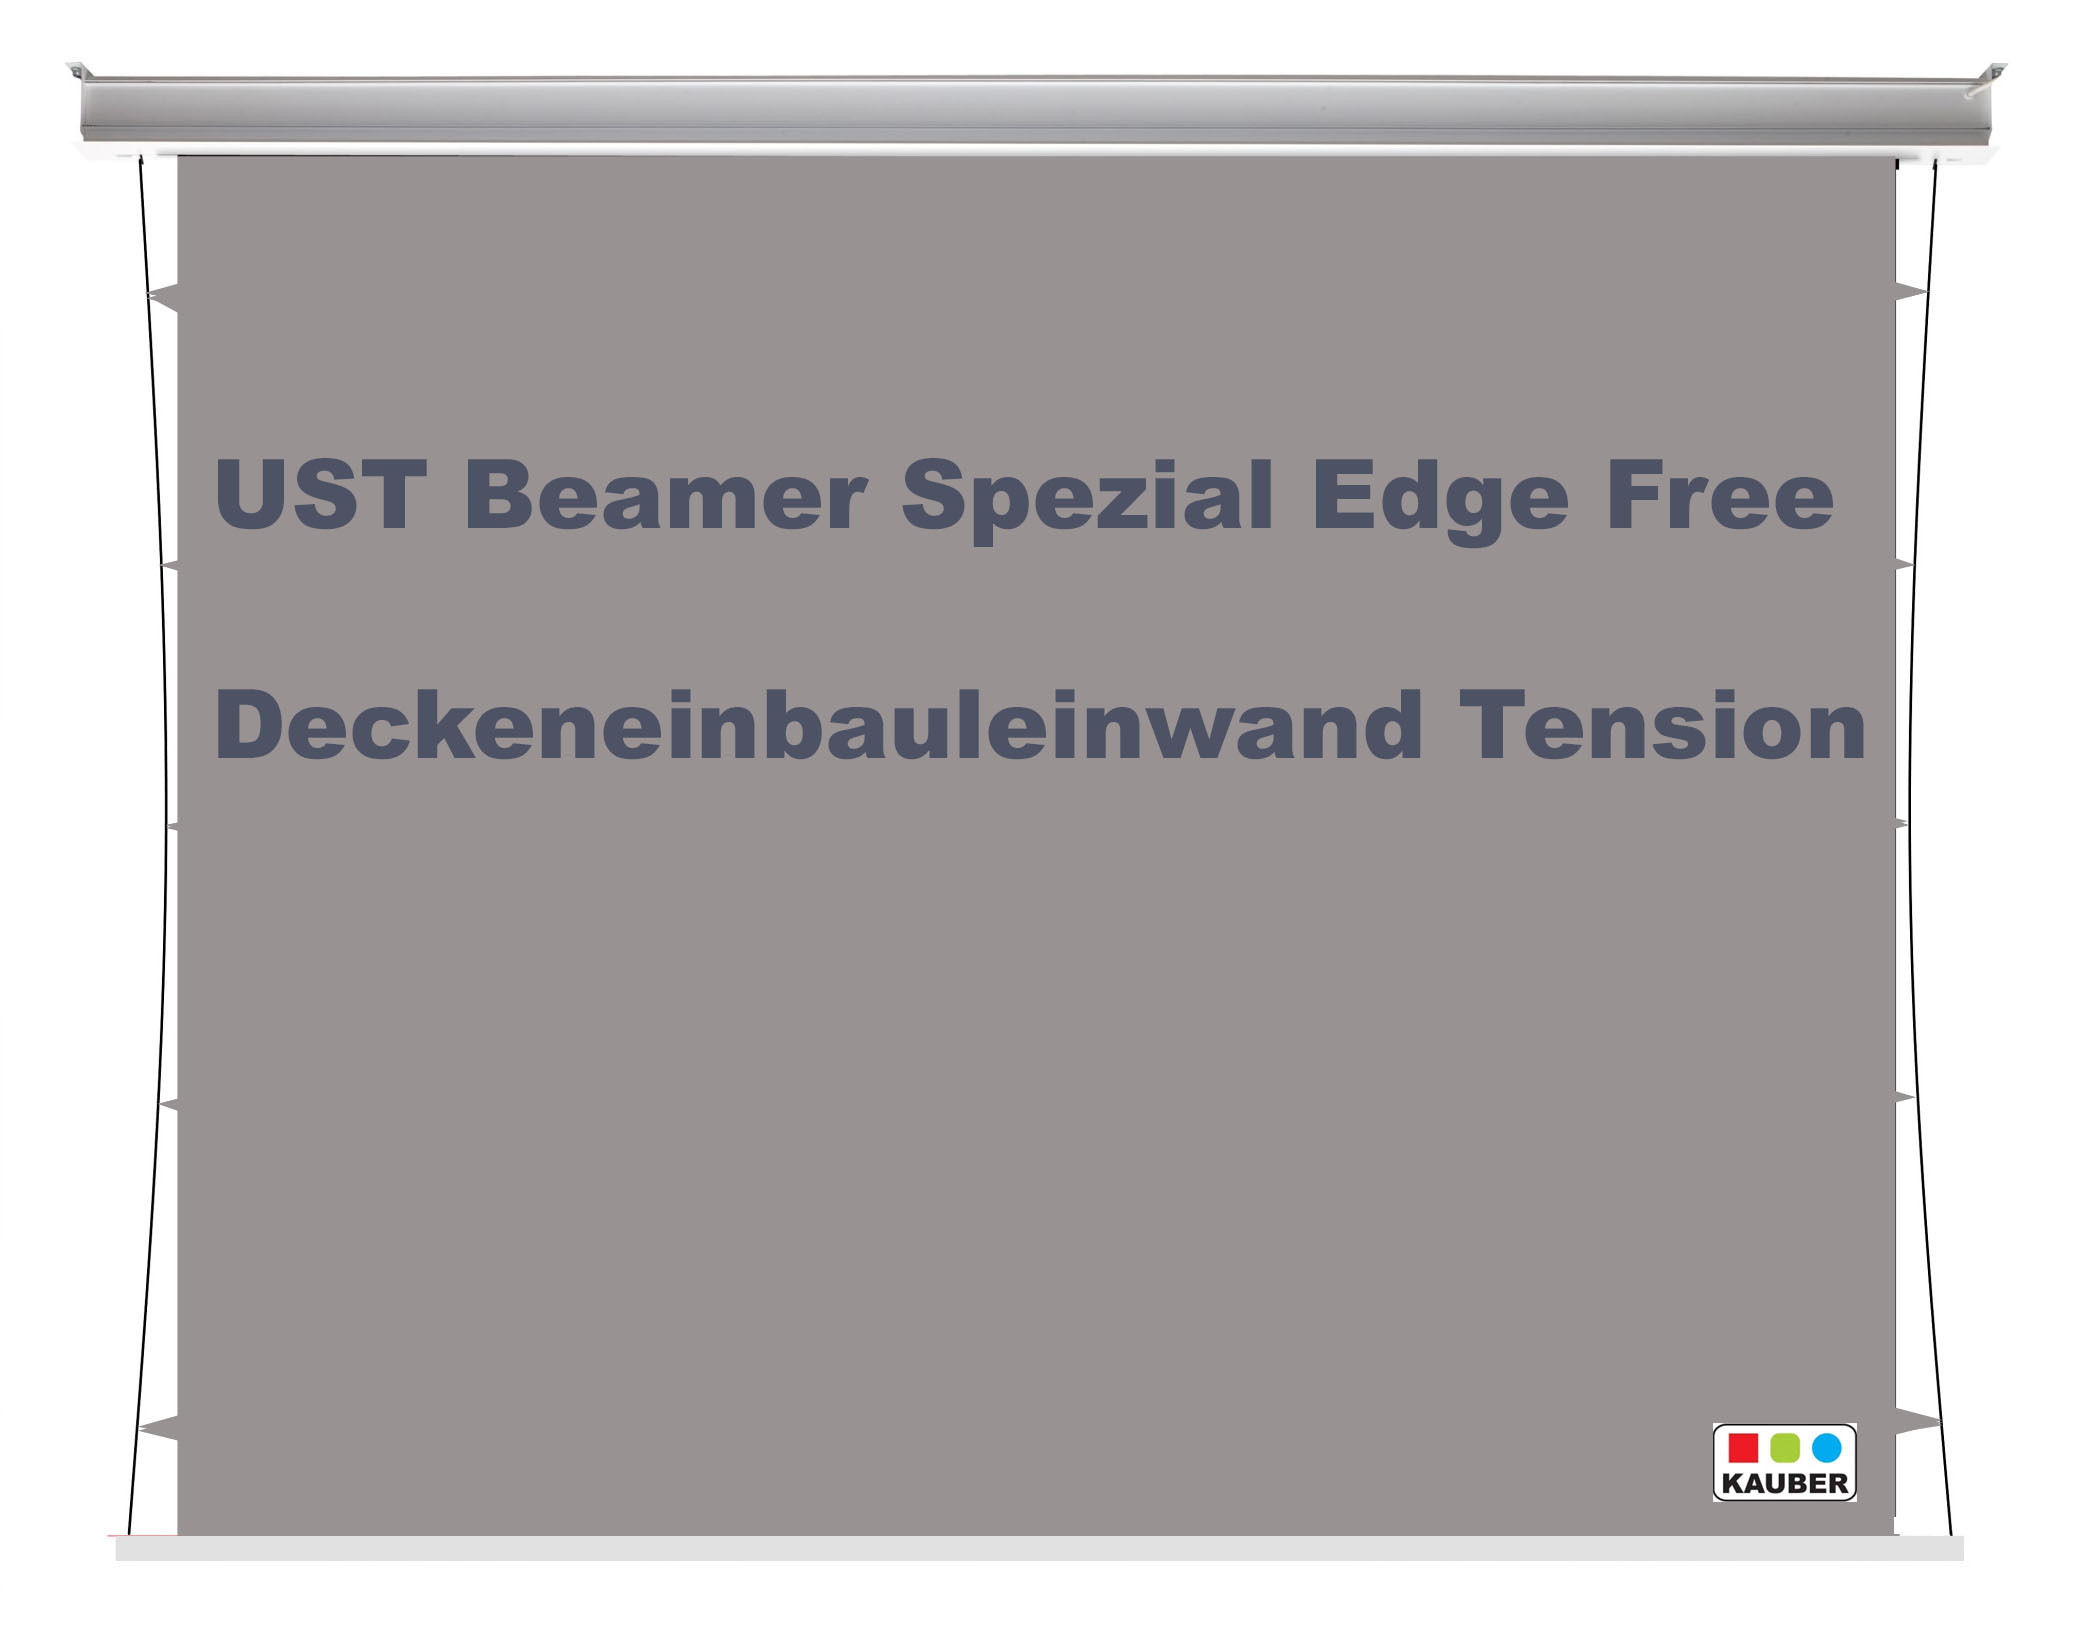 Kauber_Deckeneinbau_Tension_Edge_Free_UST